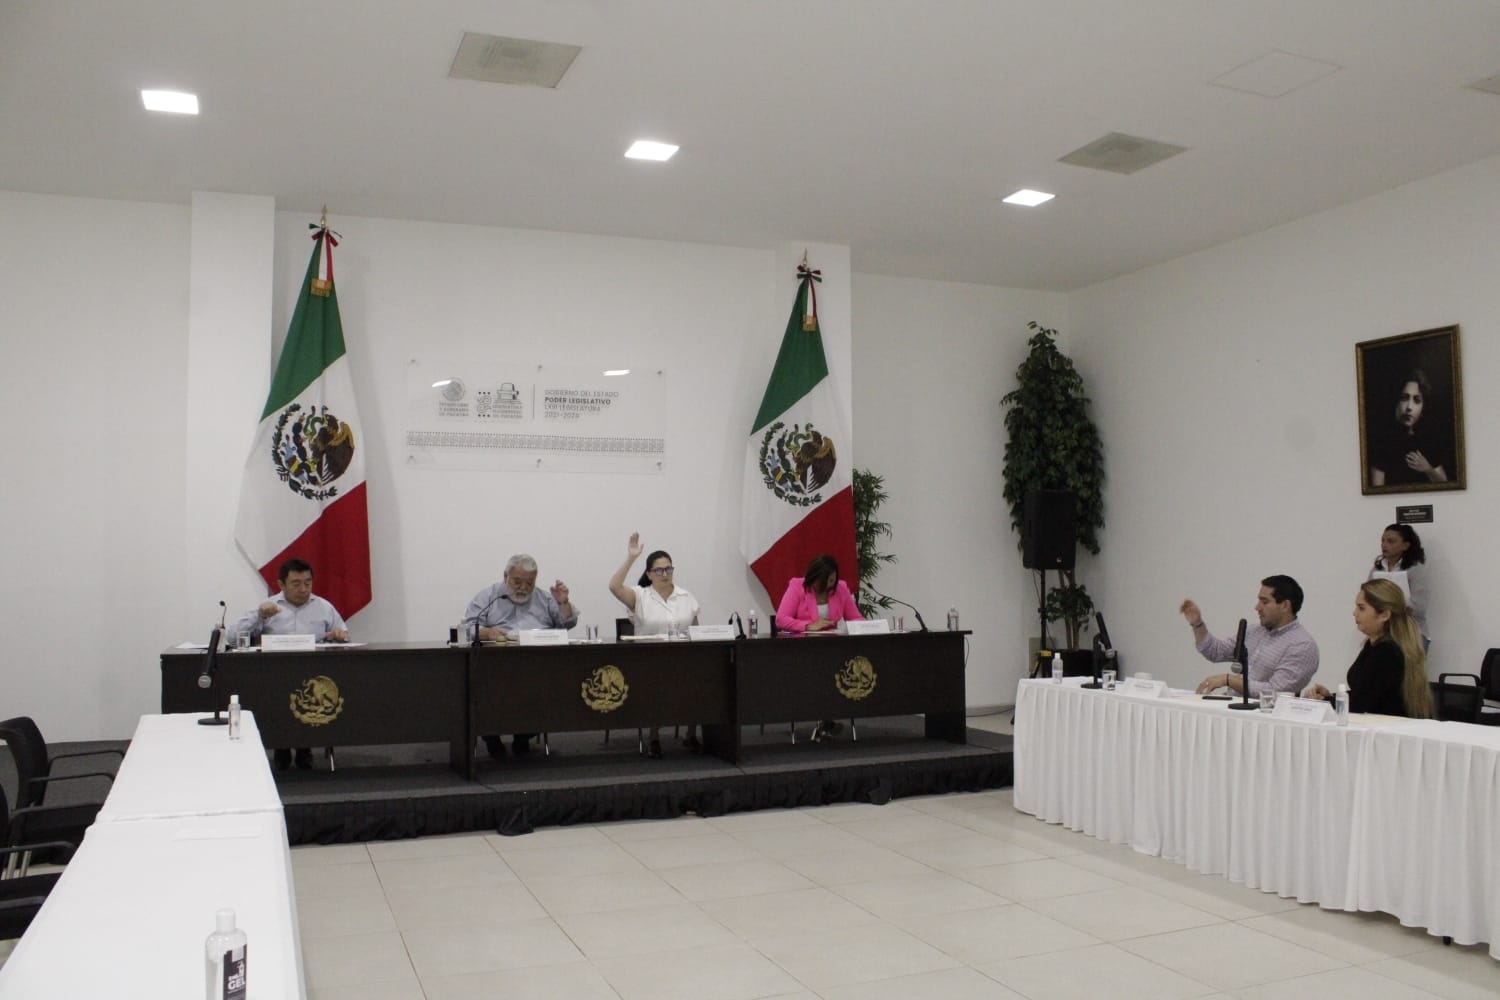 Teatro Regional será Patrimonio Cultural de Yucatán; proyecto avanza en comisiones del Congreso